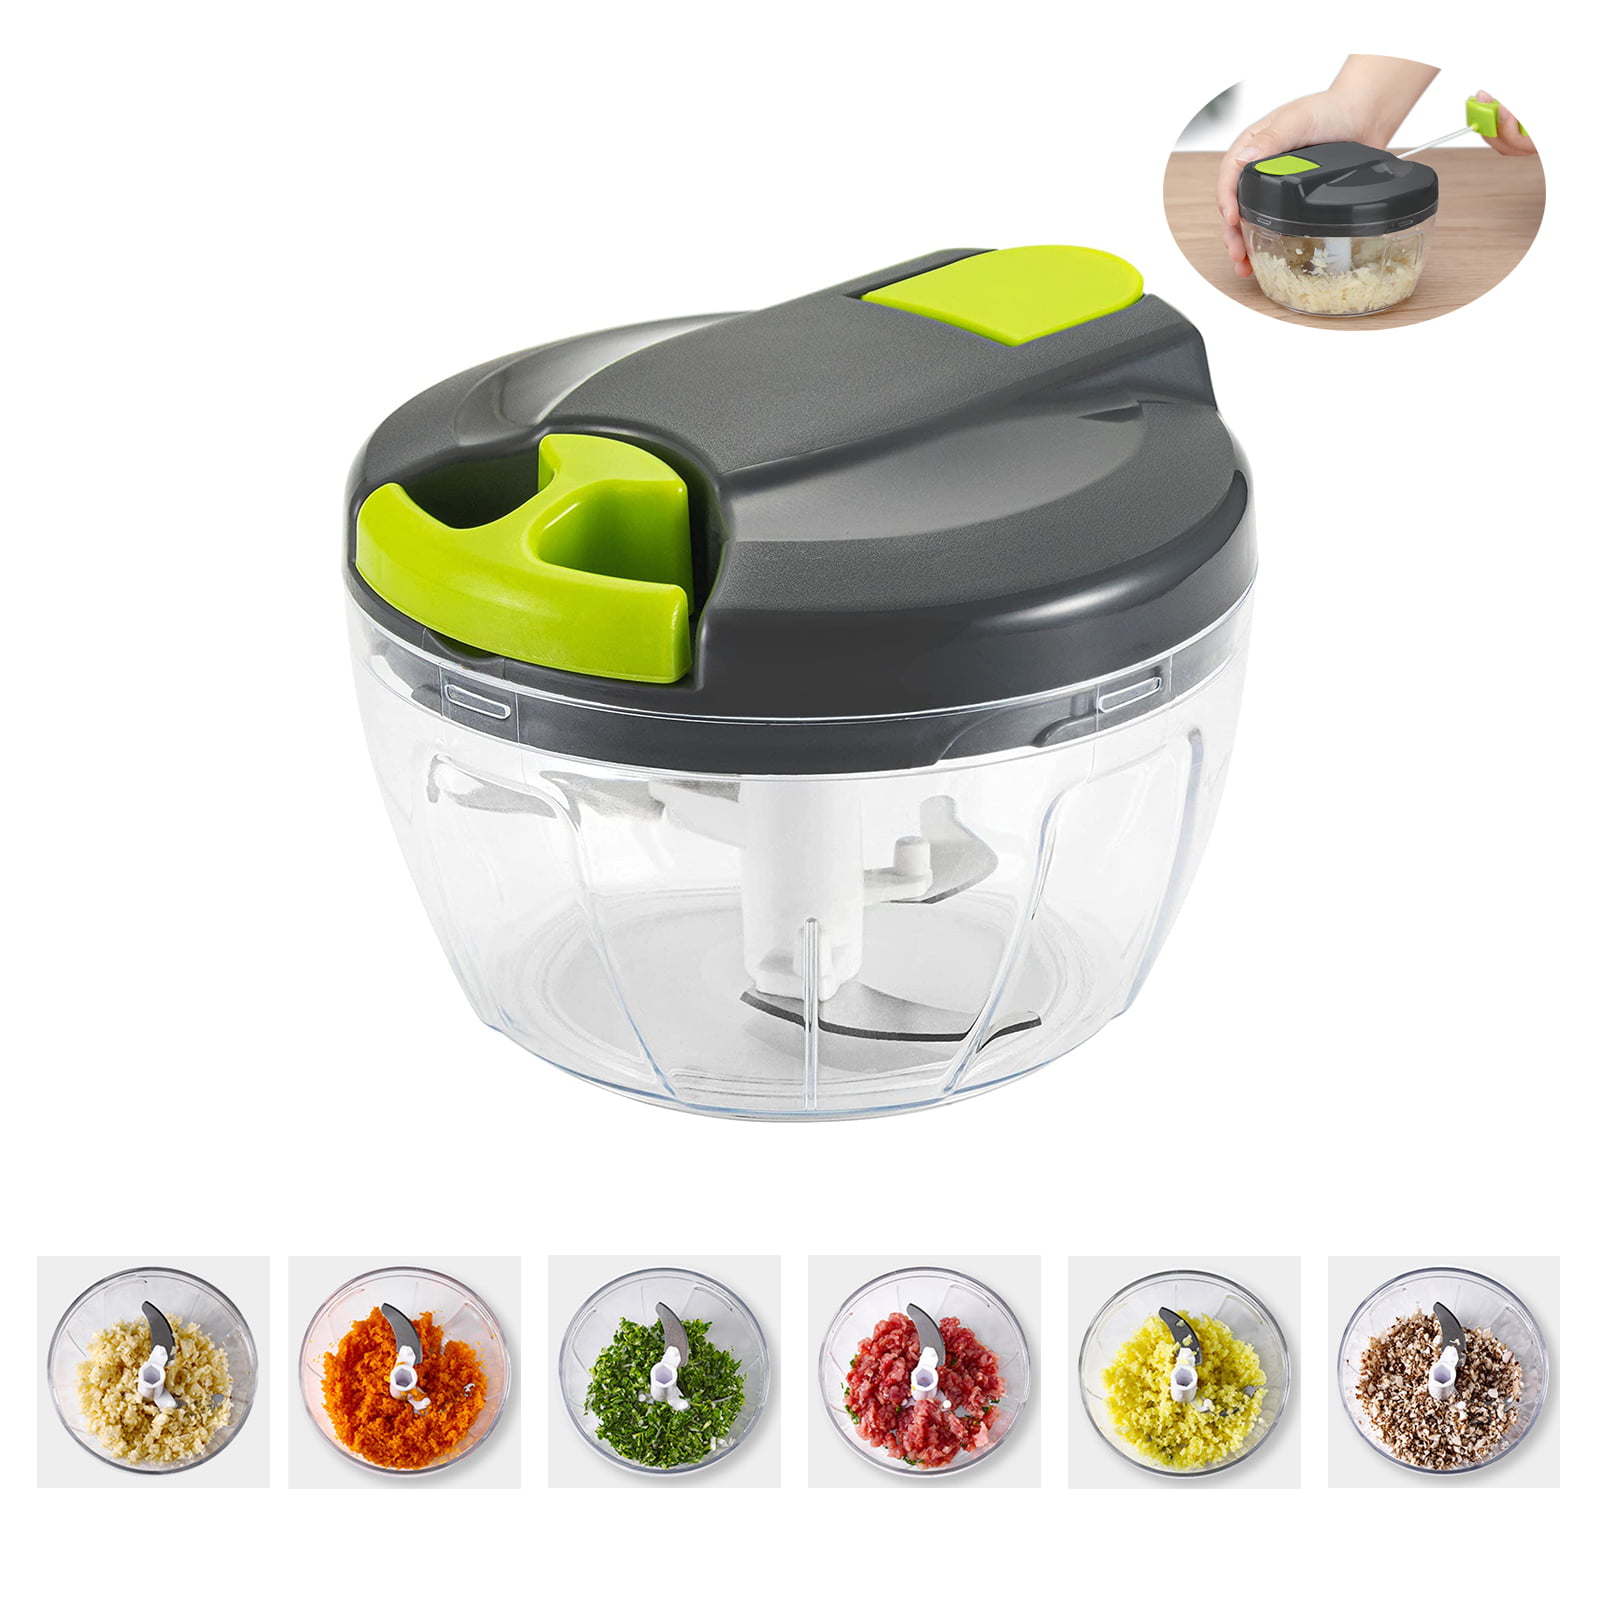 Details about   Easy Pull Manual Food Vegetable Processor Chopper Blender Mixer Slicer 